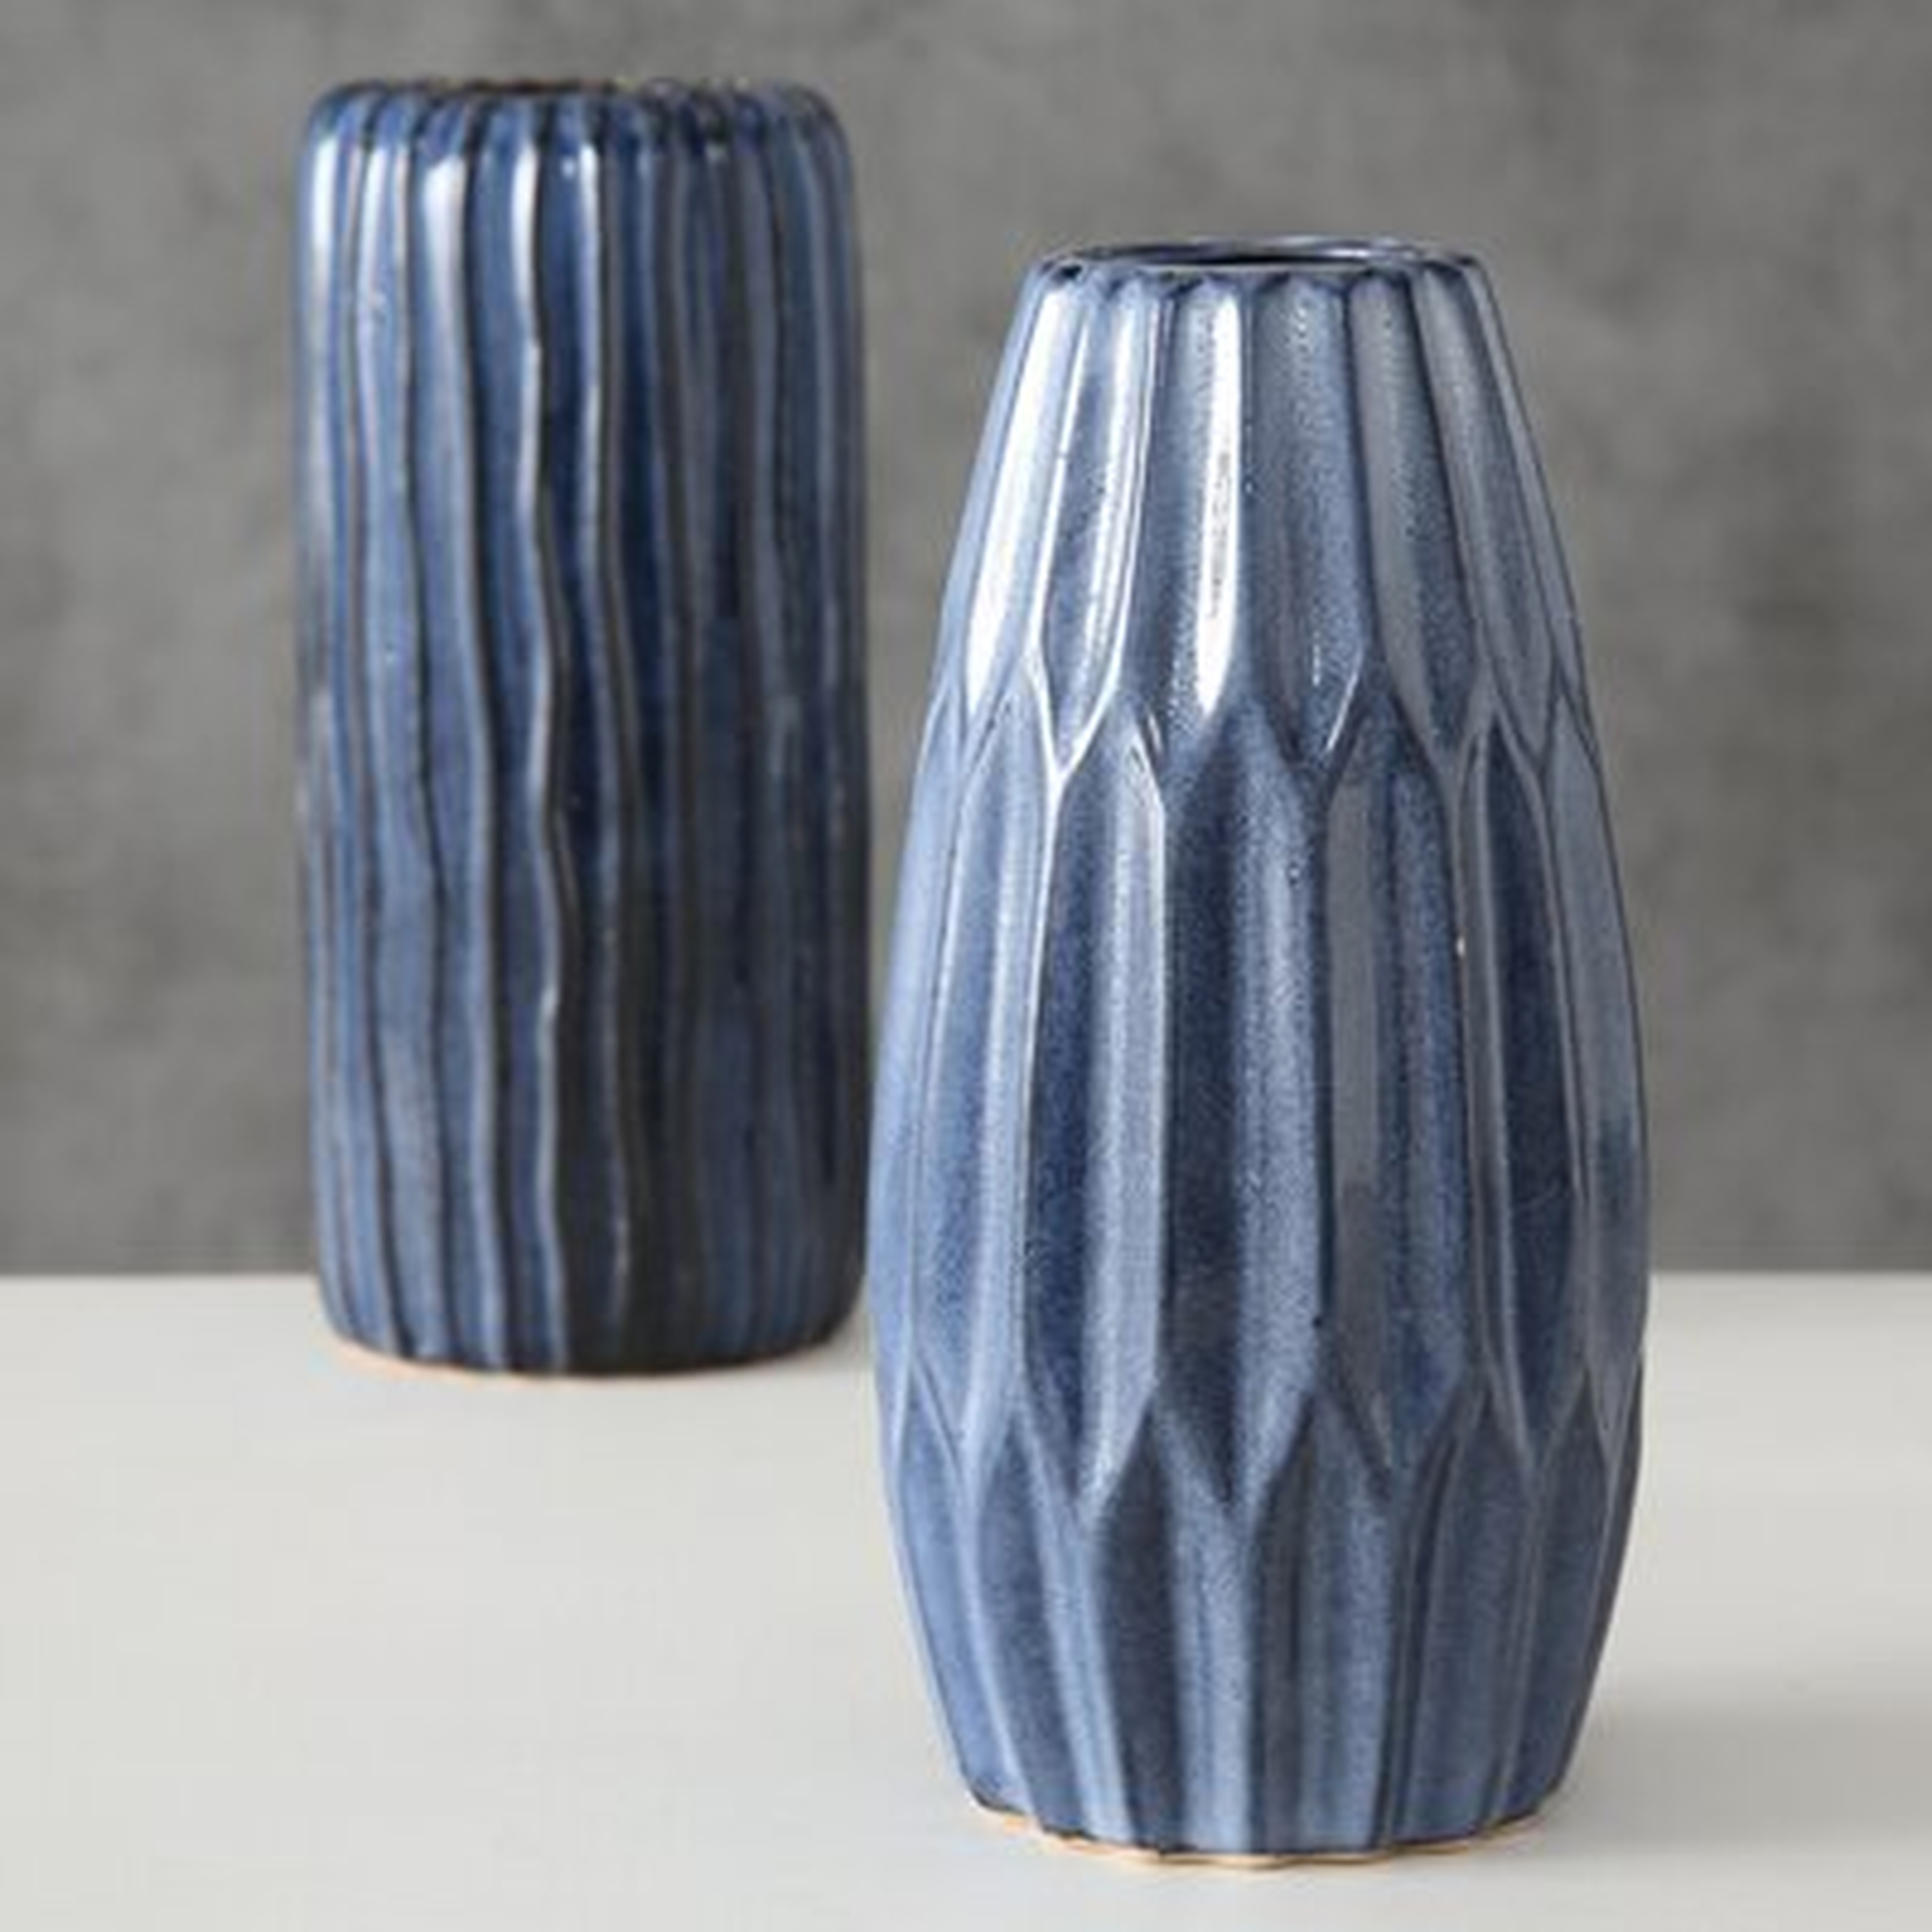 2 Piece Blue Porcelain Table Vase Set - Wayfair